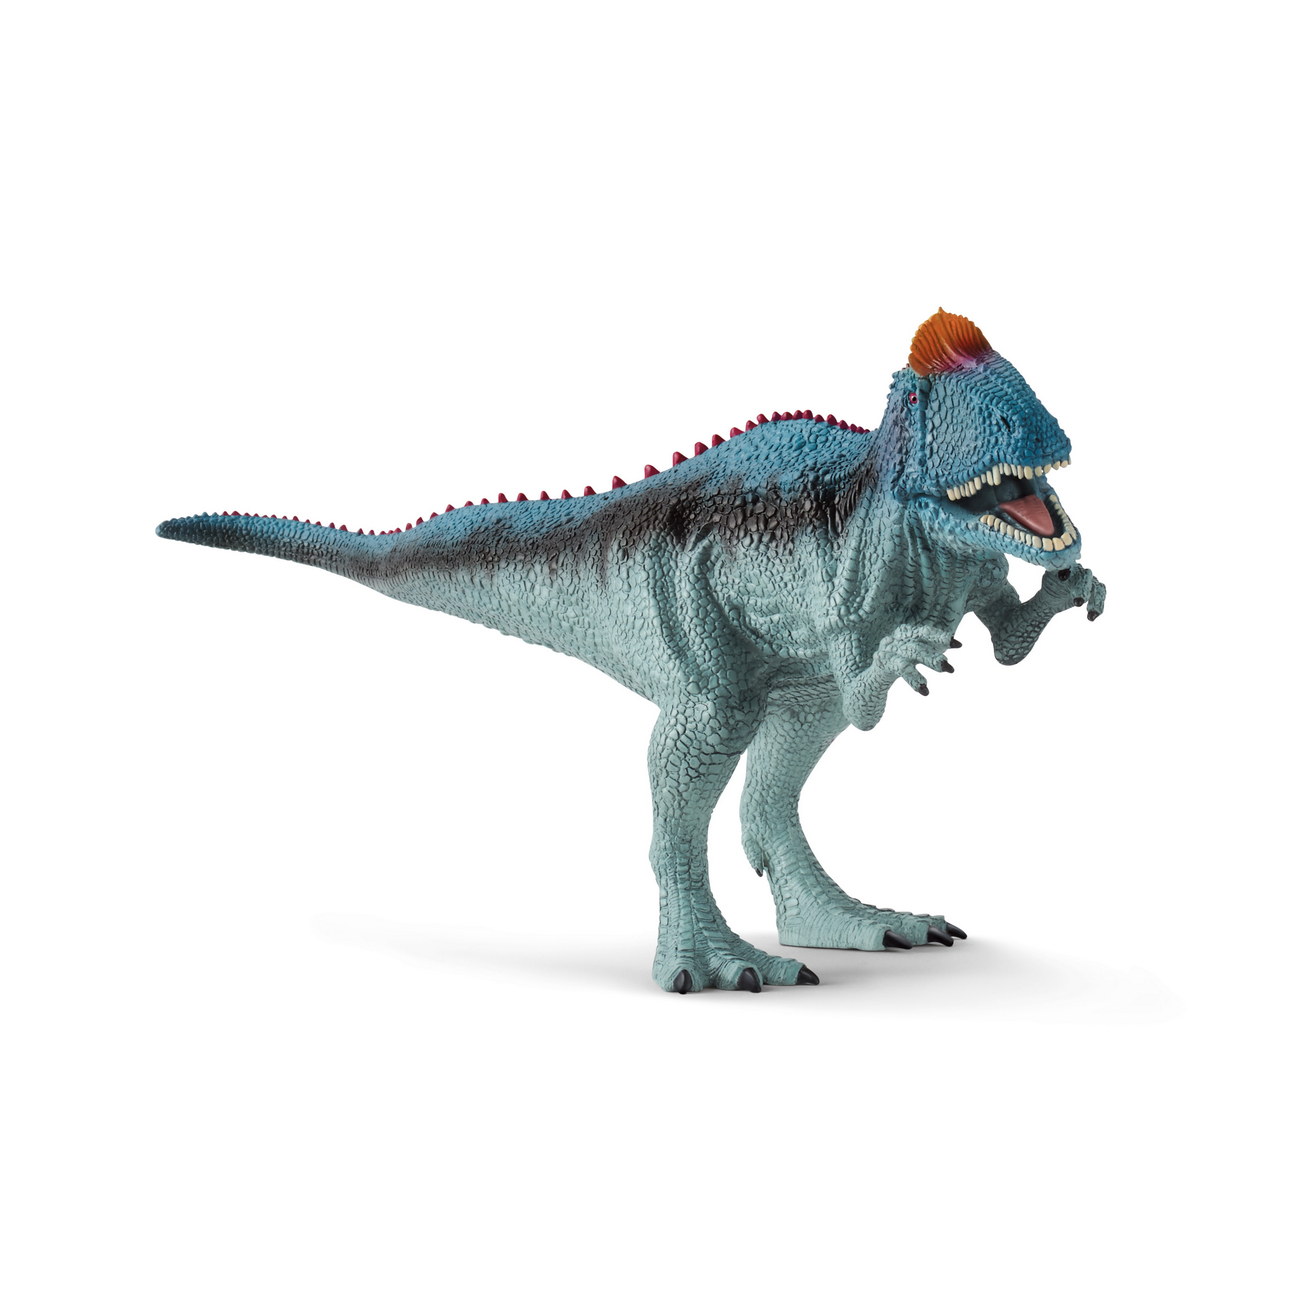 Schleich 15020 - Cryolophosaurus - Dinosaurier Figur